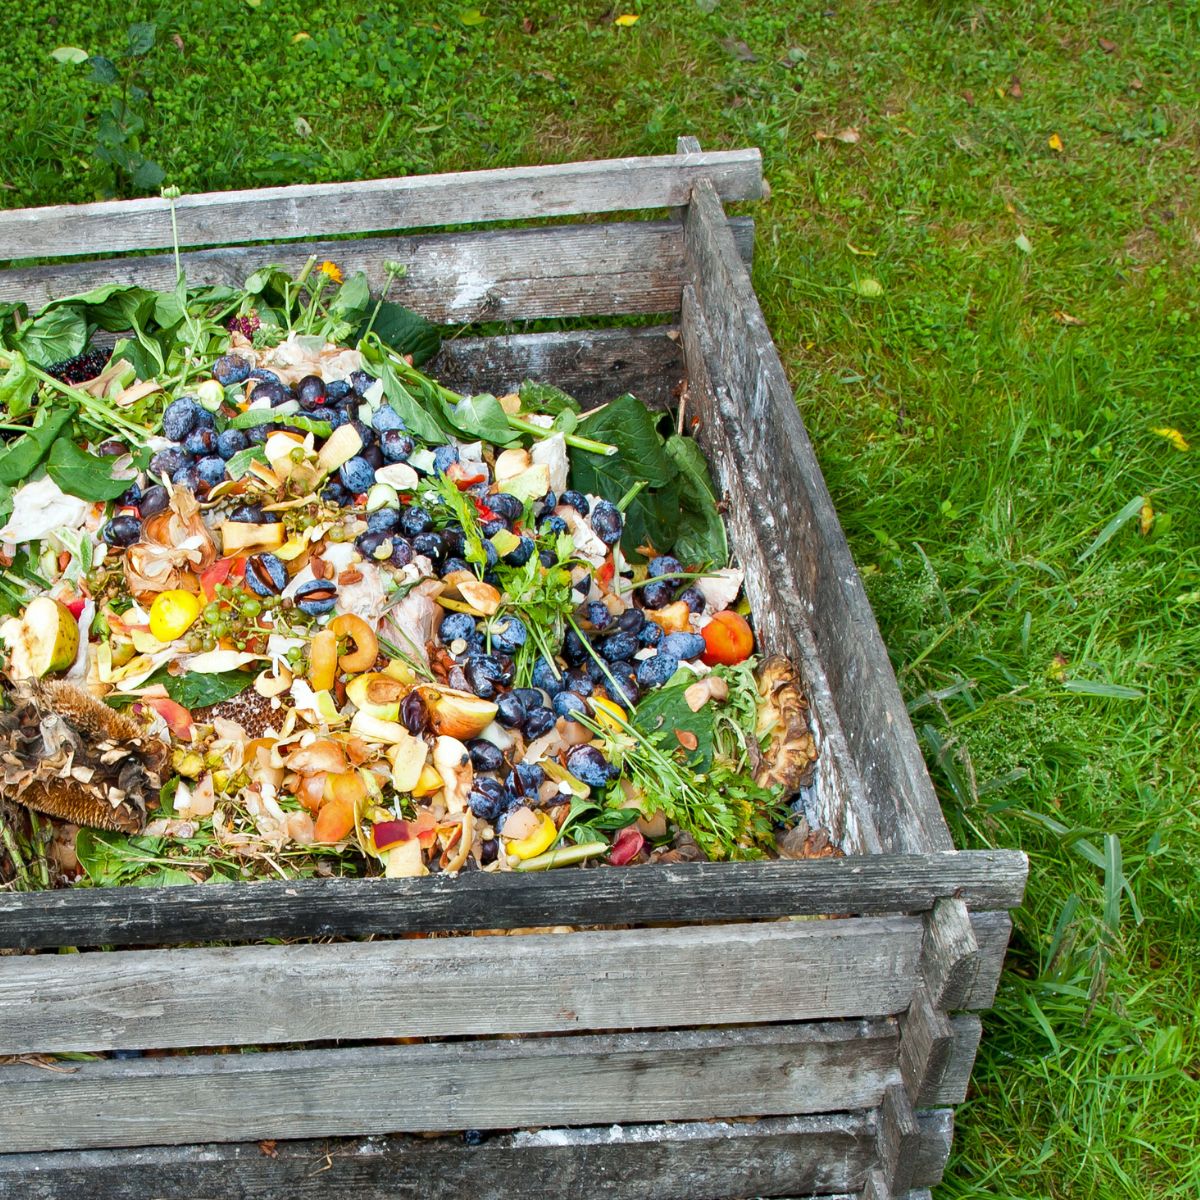 wooden compost bin